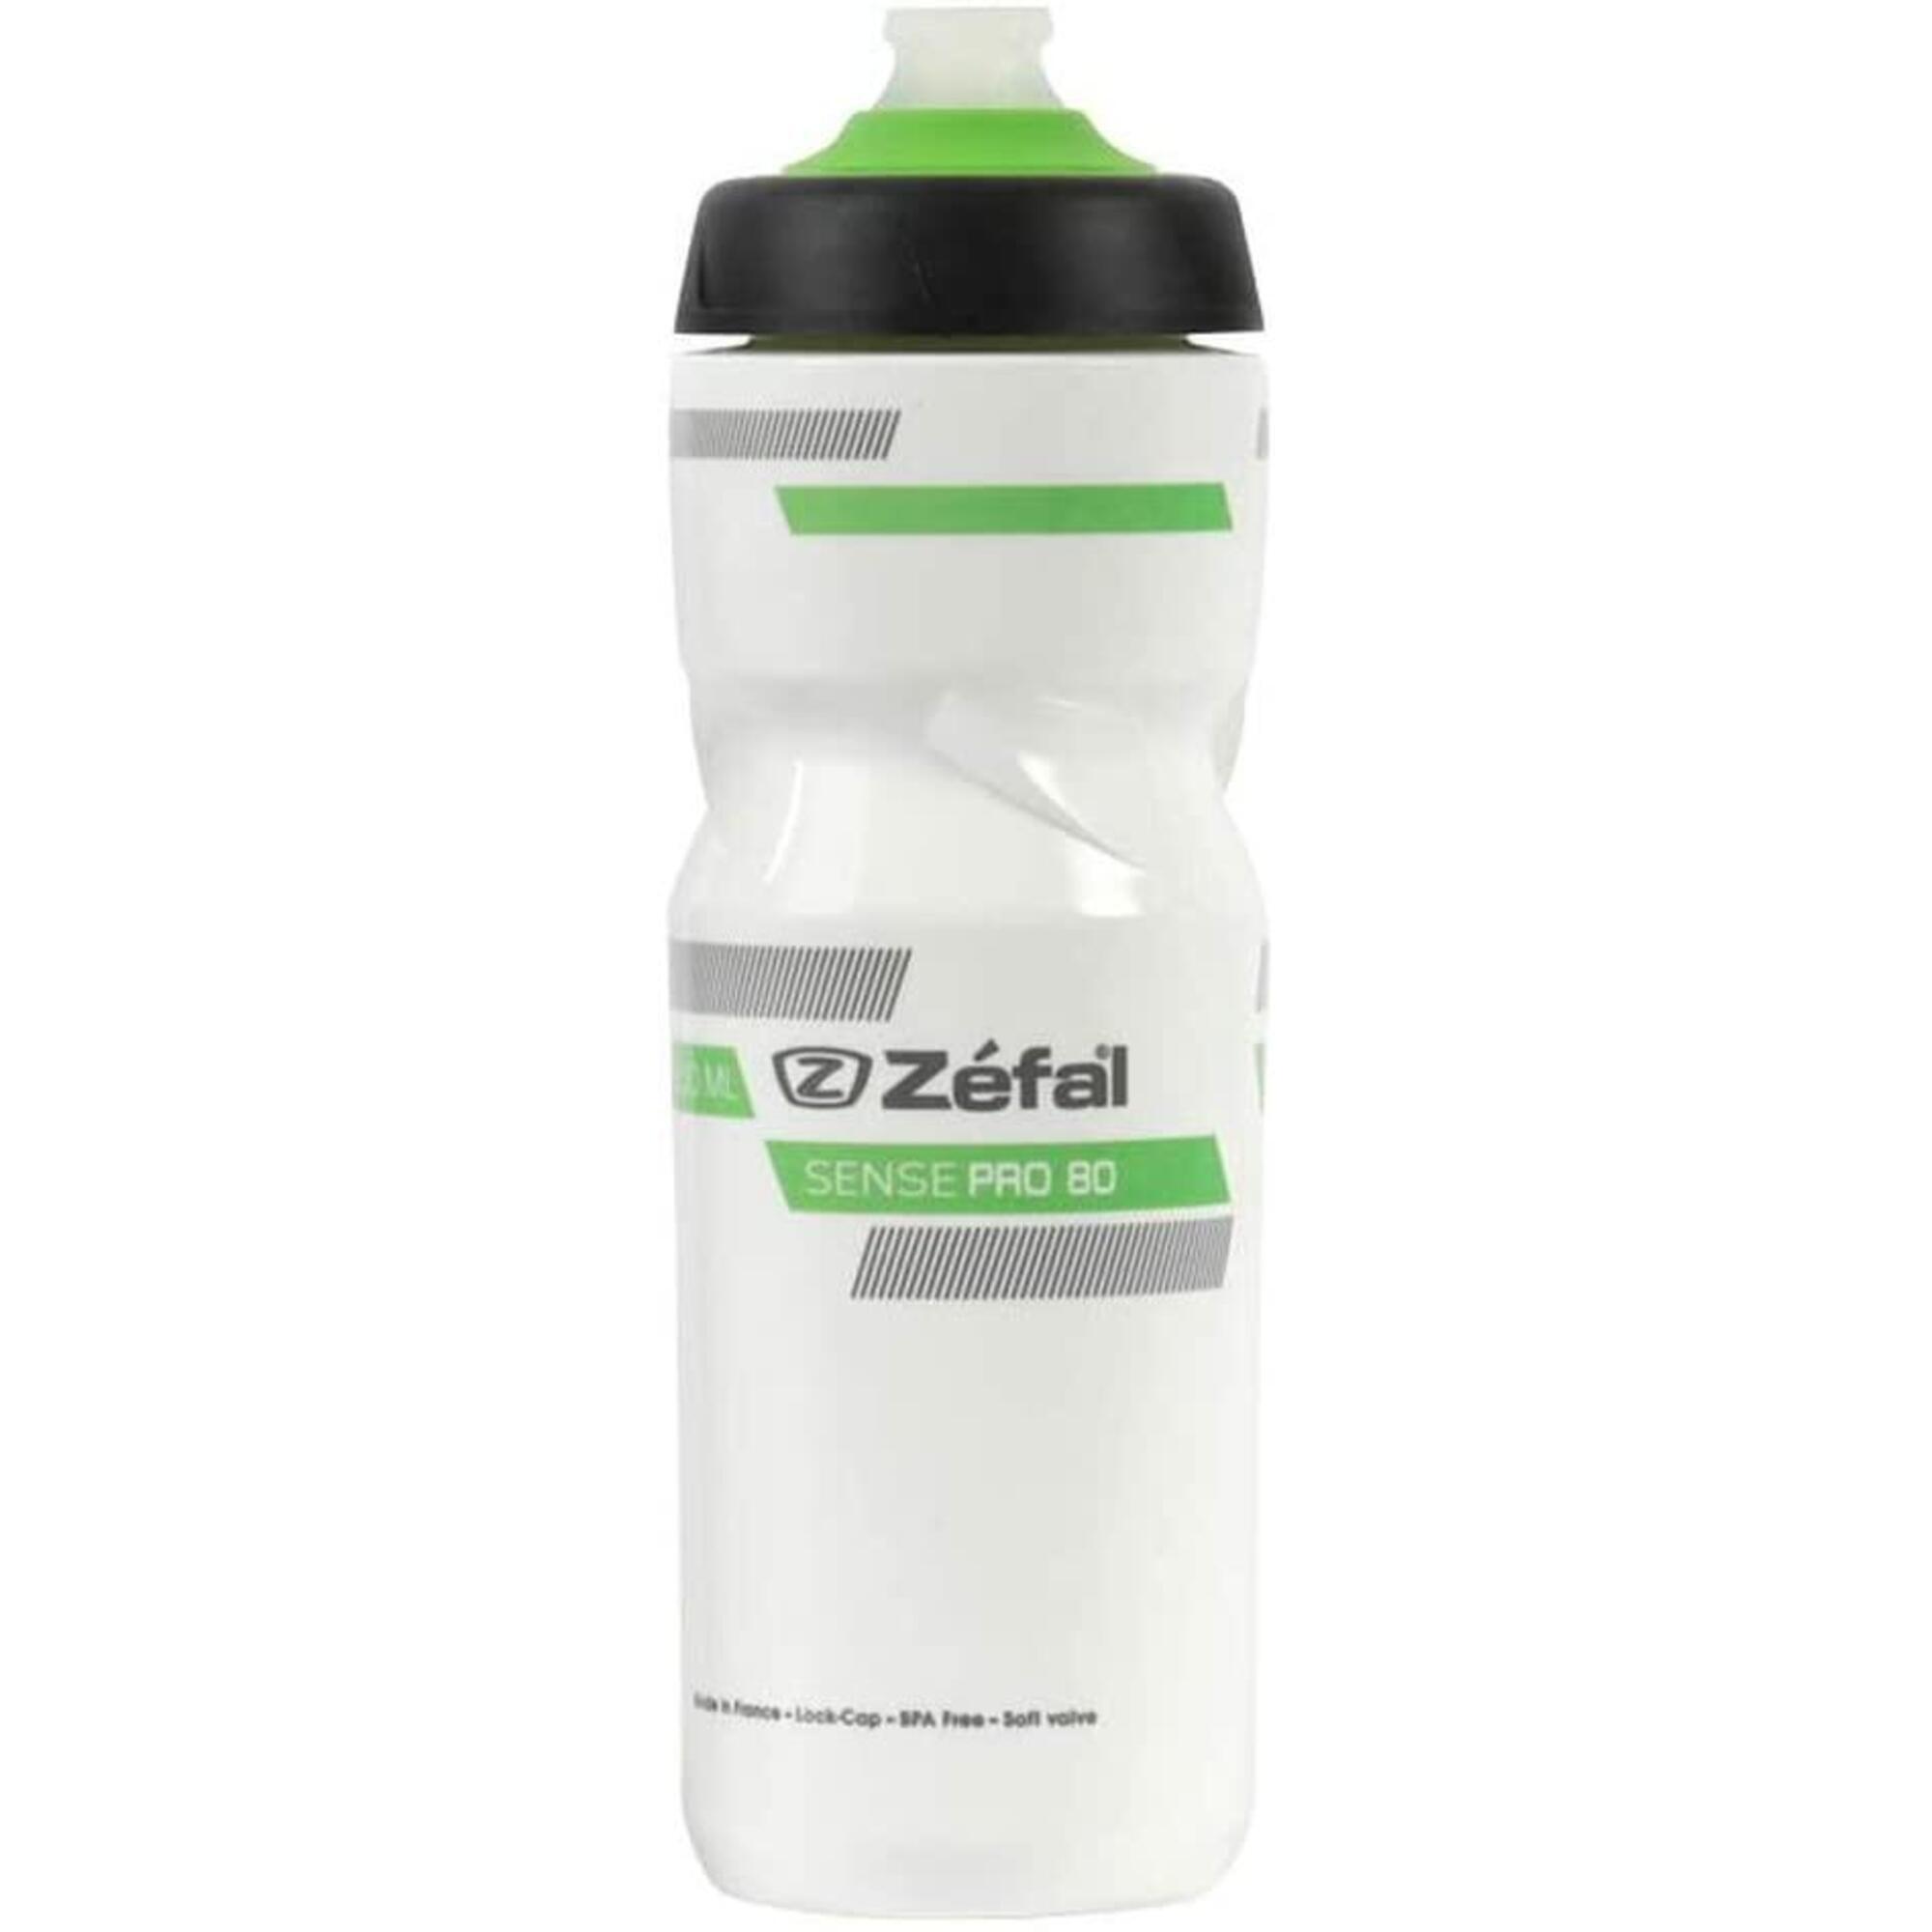 Zefal Sense Pro 80 Water Bottle - White 1/3